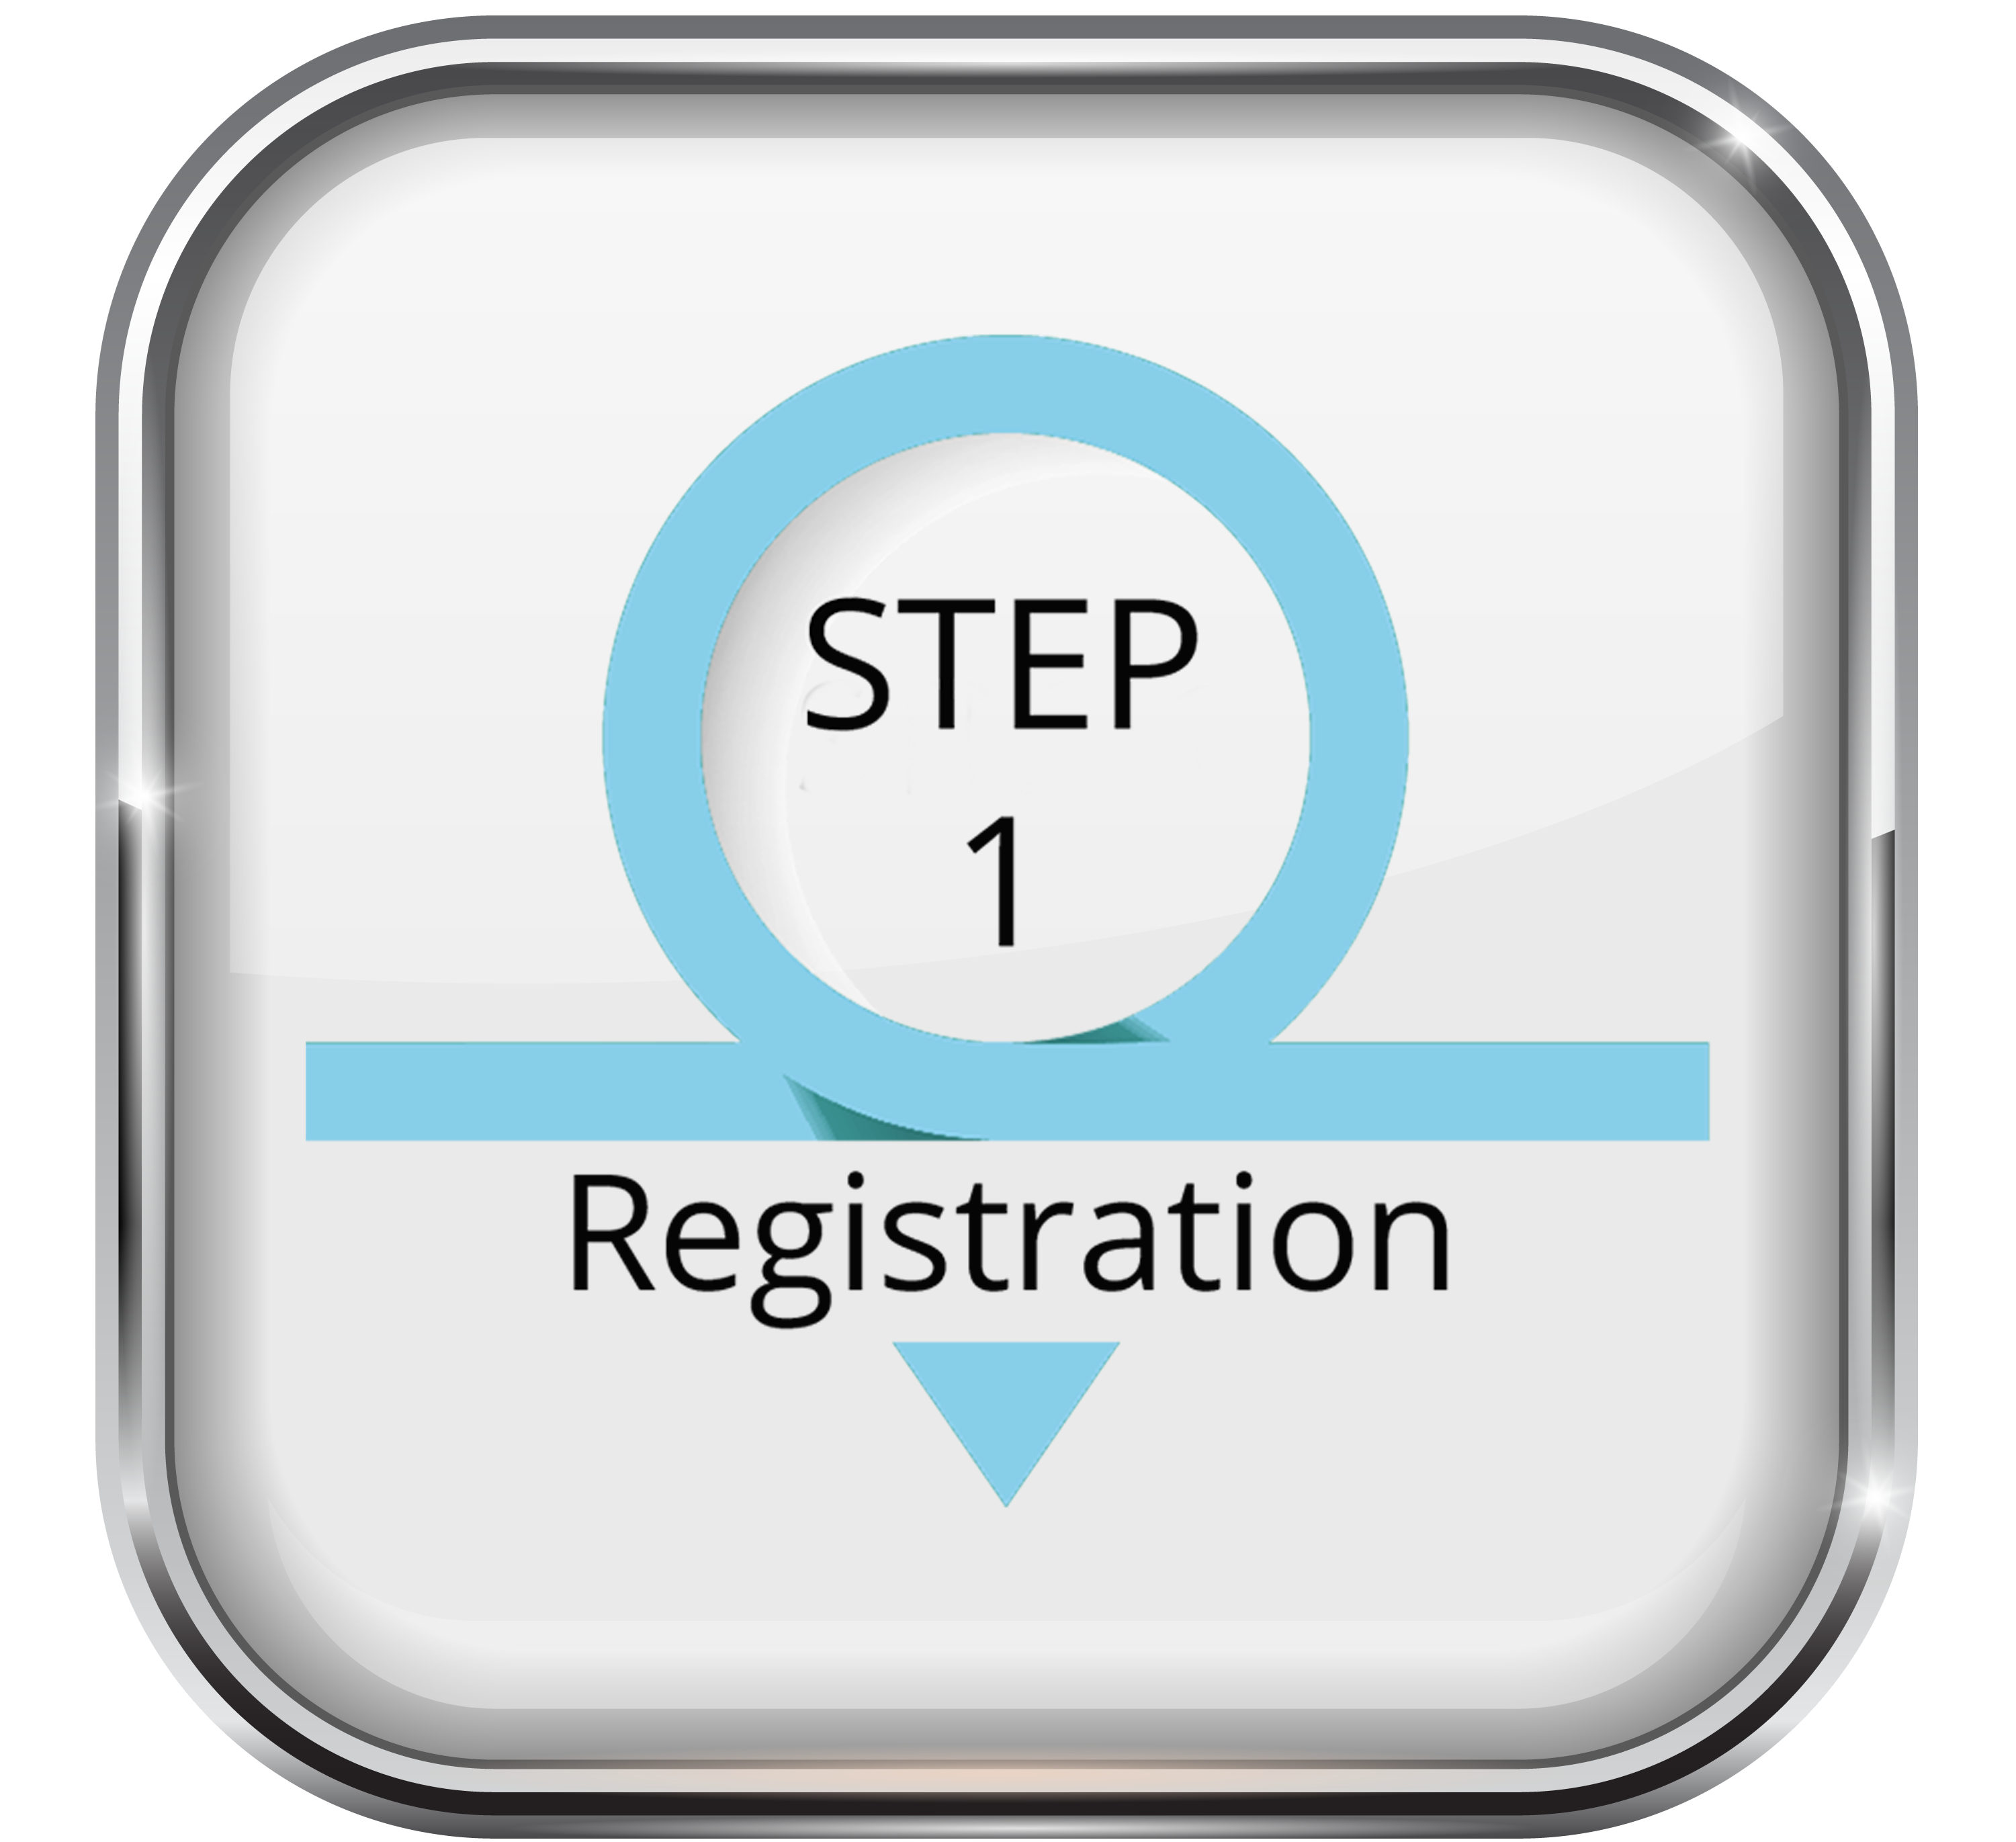 Registation